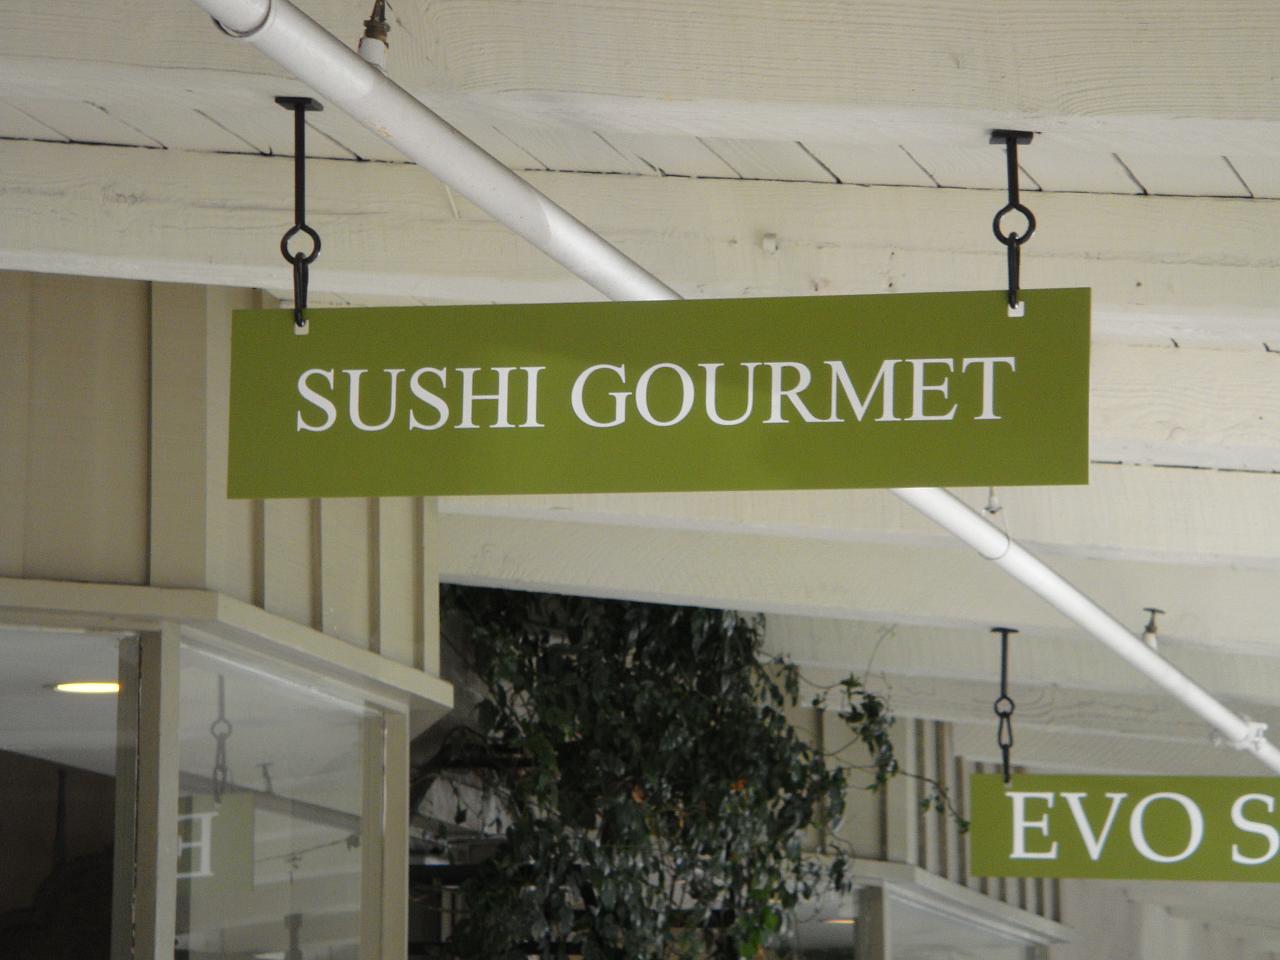 Sushi Gourmet Sign